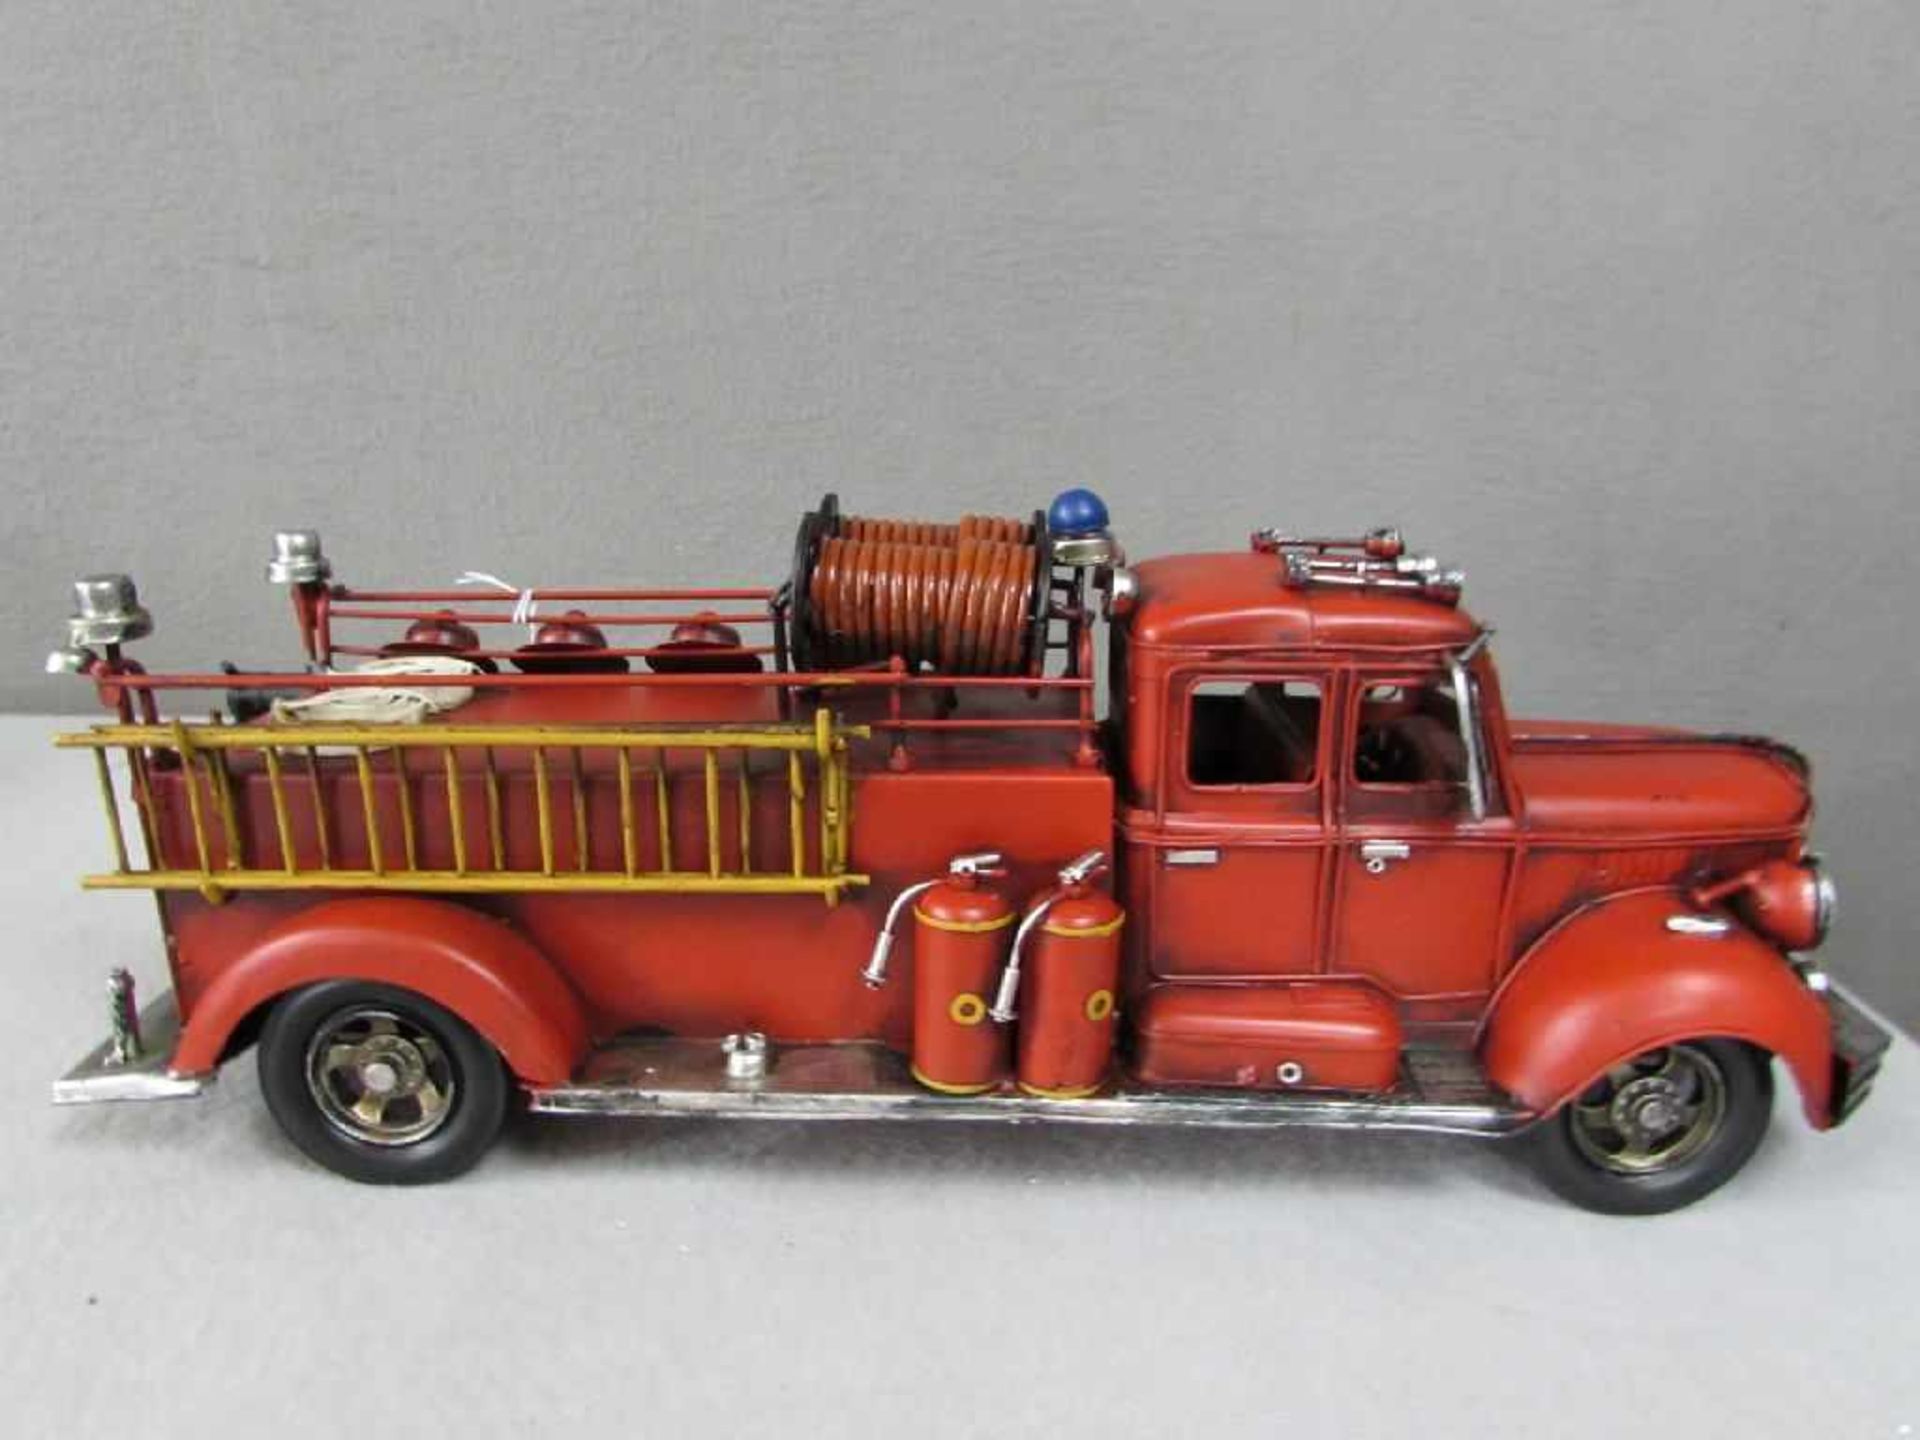 Feuerwehrmodell Blech U.S.A 51 cm länge - Bild 2 aus 4